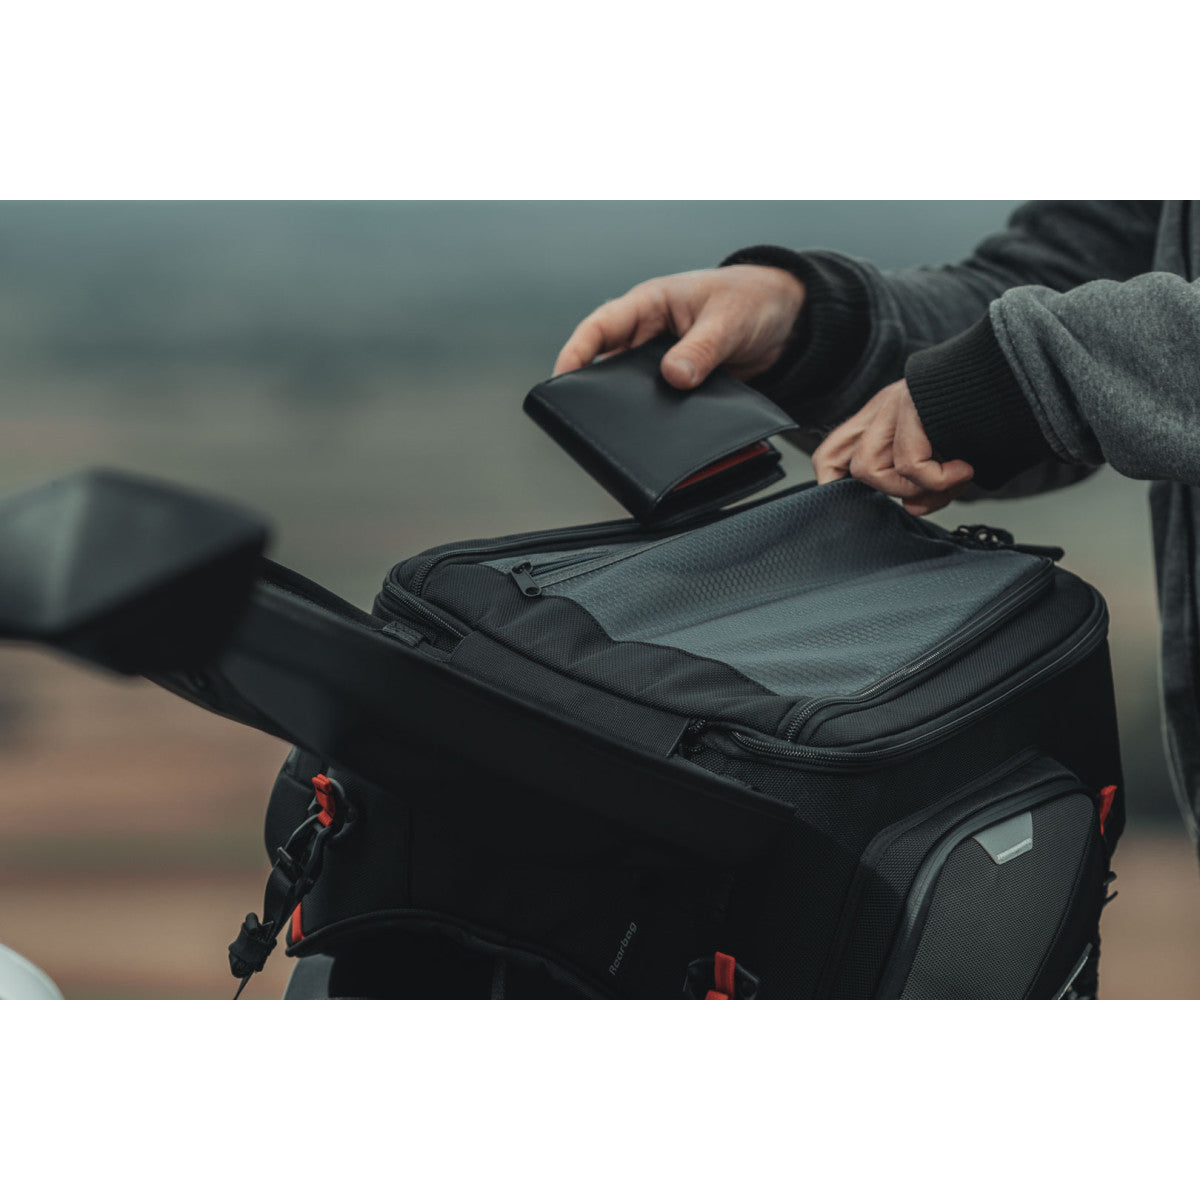 Pro Rearbag Tail Bag